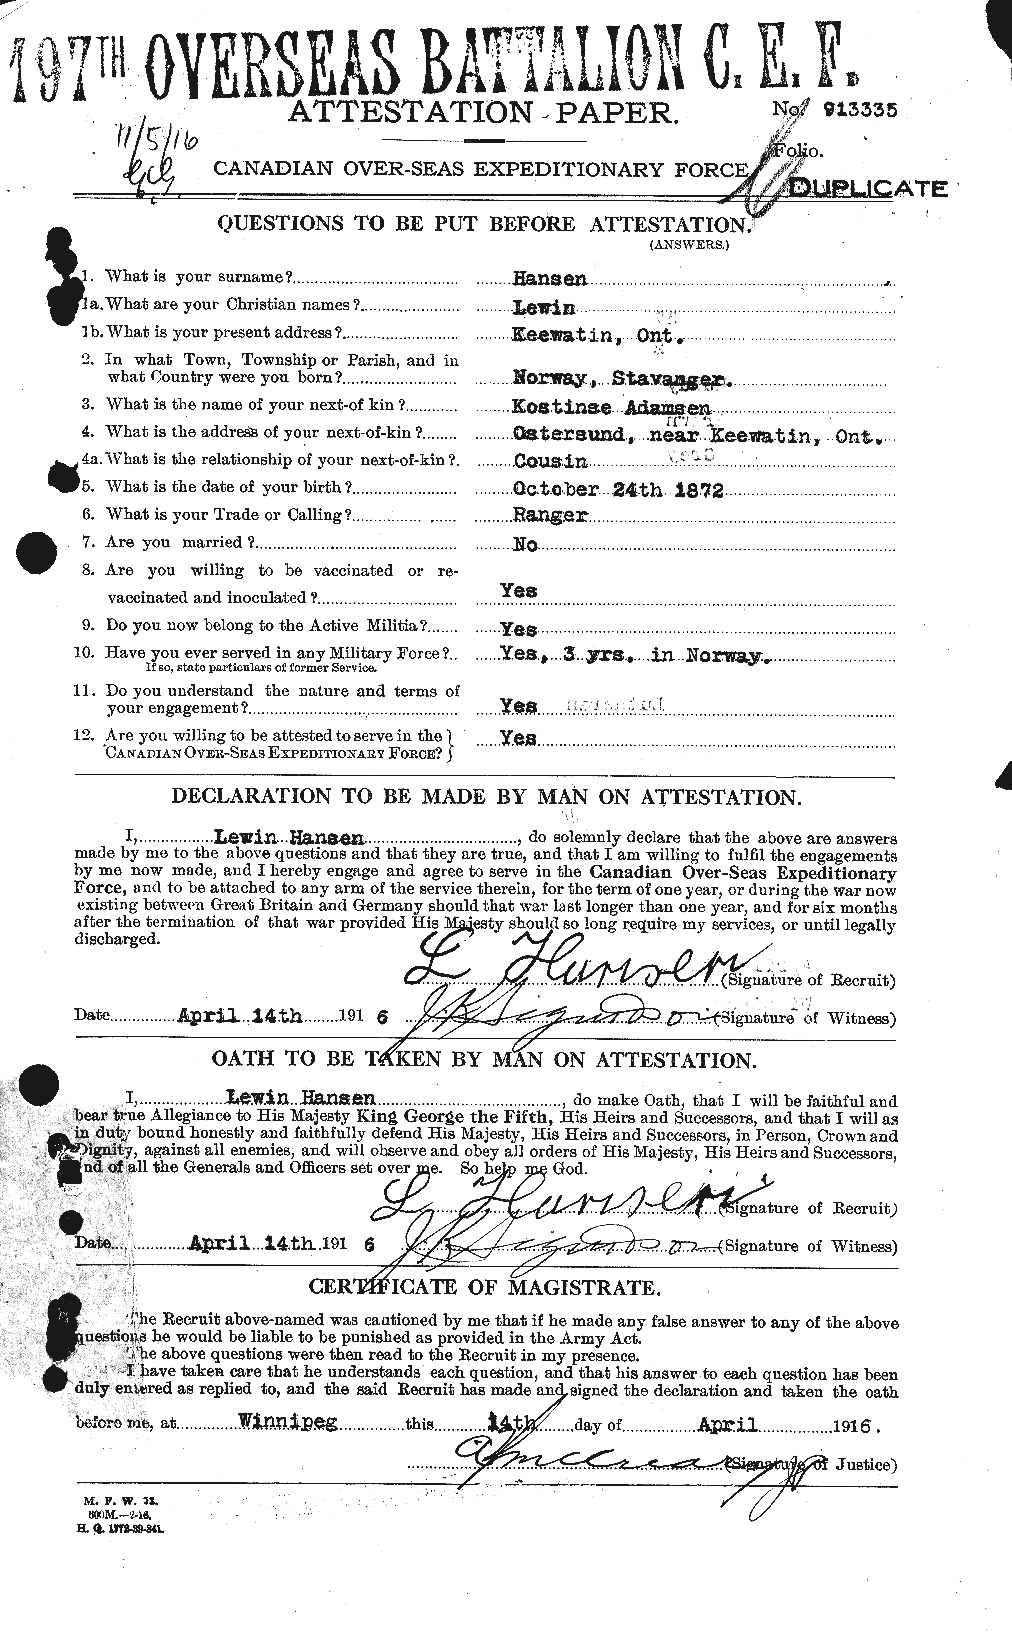 Dossiers du Personnel de la Première Guerre mondiale - CEC 378711a